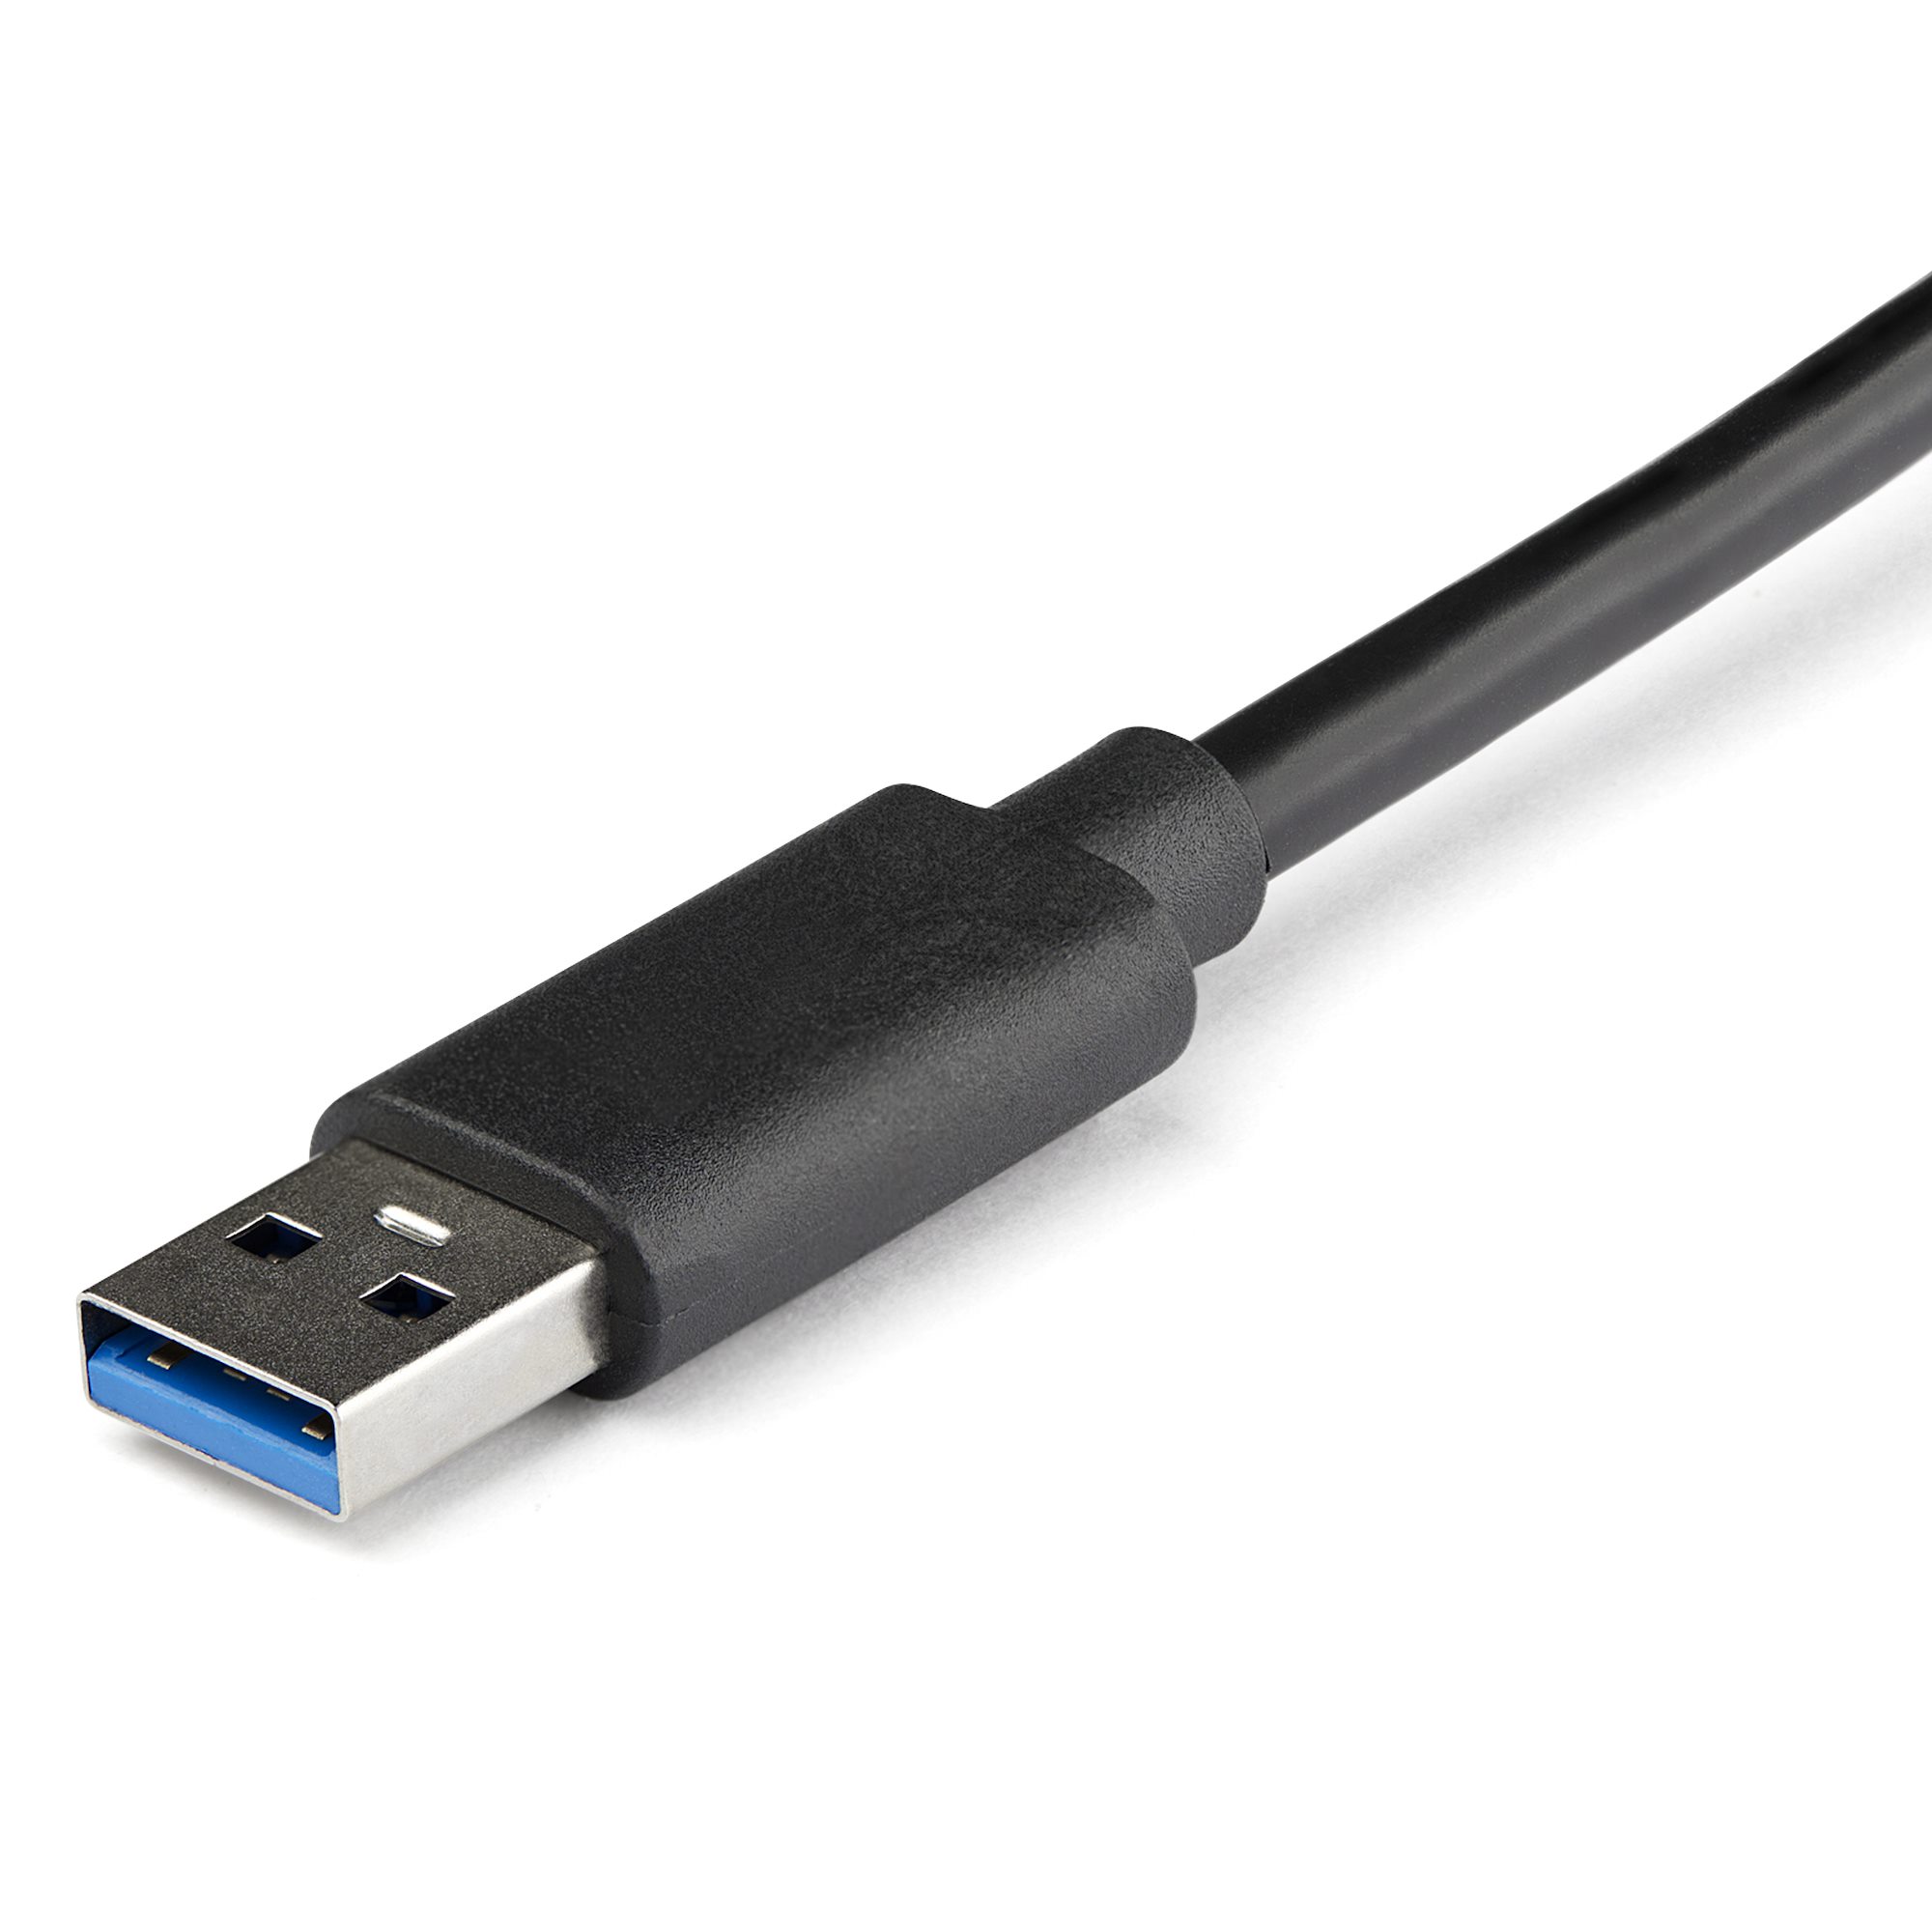 Adaptateur USB Ethernet Gigabit pour Nintendo Switch et